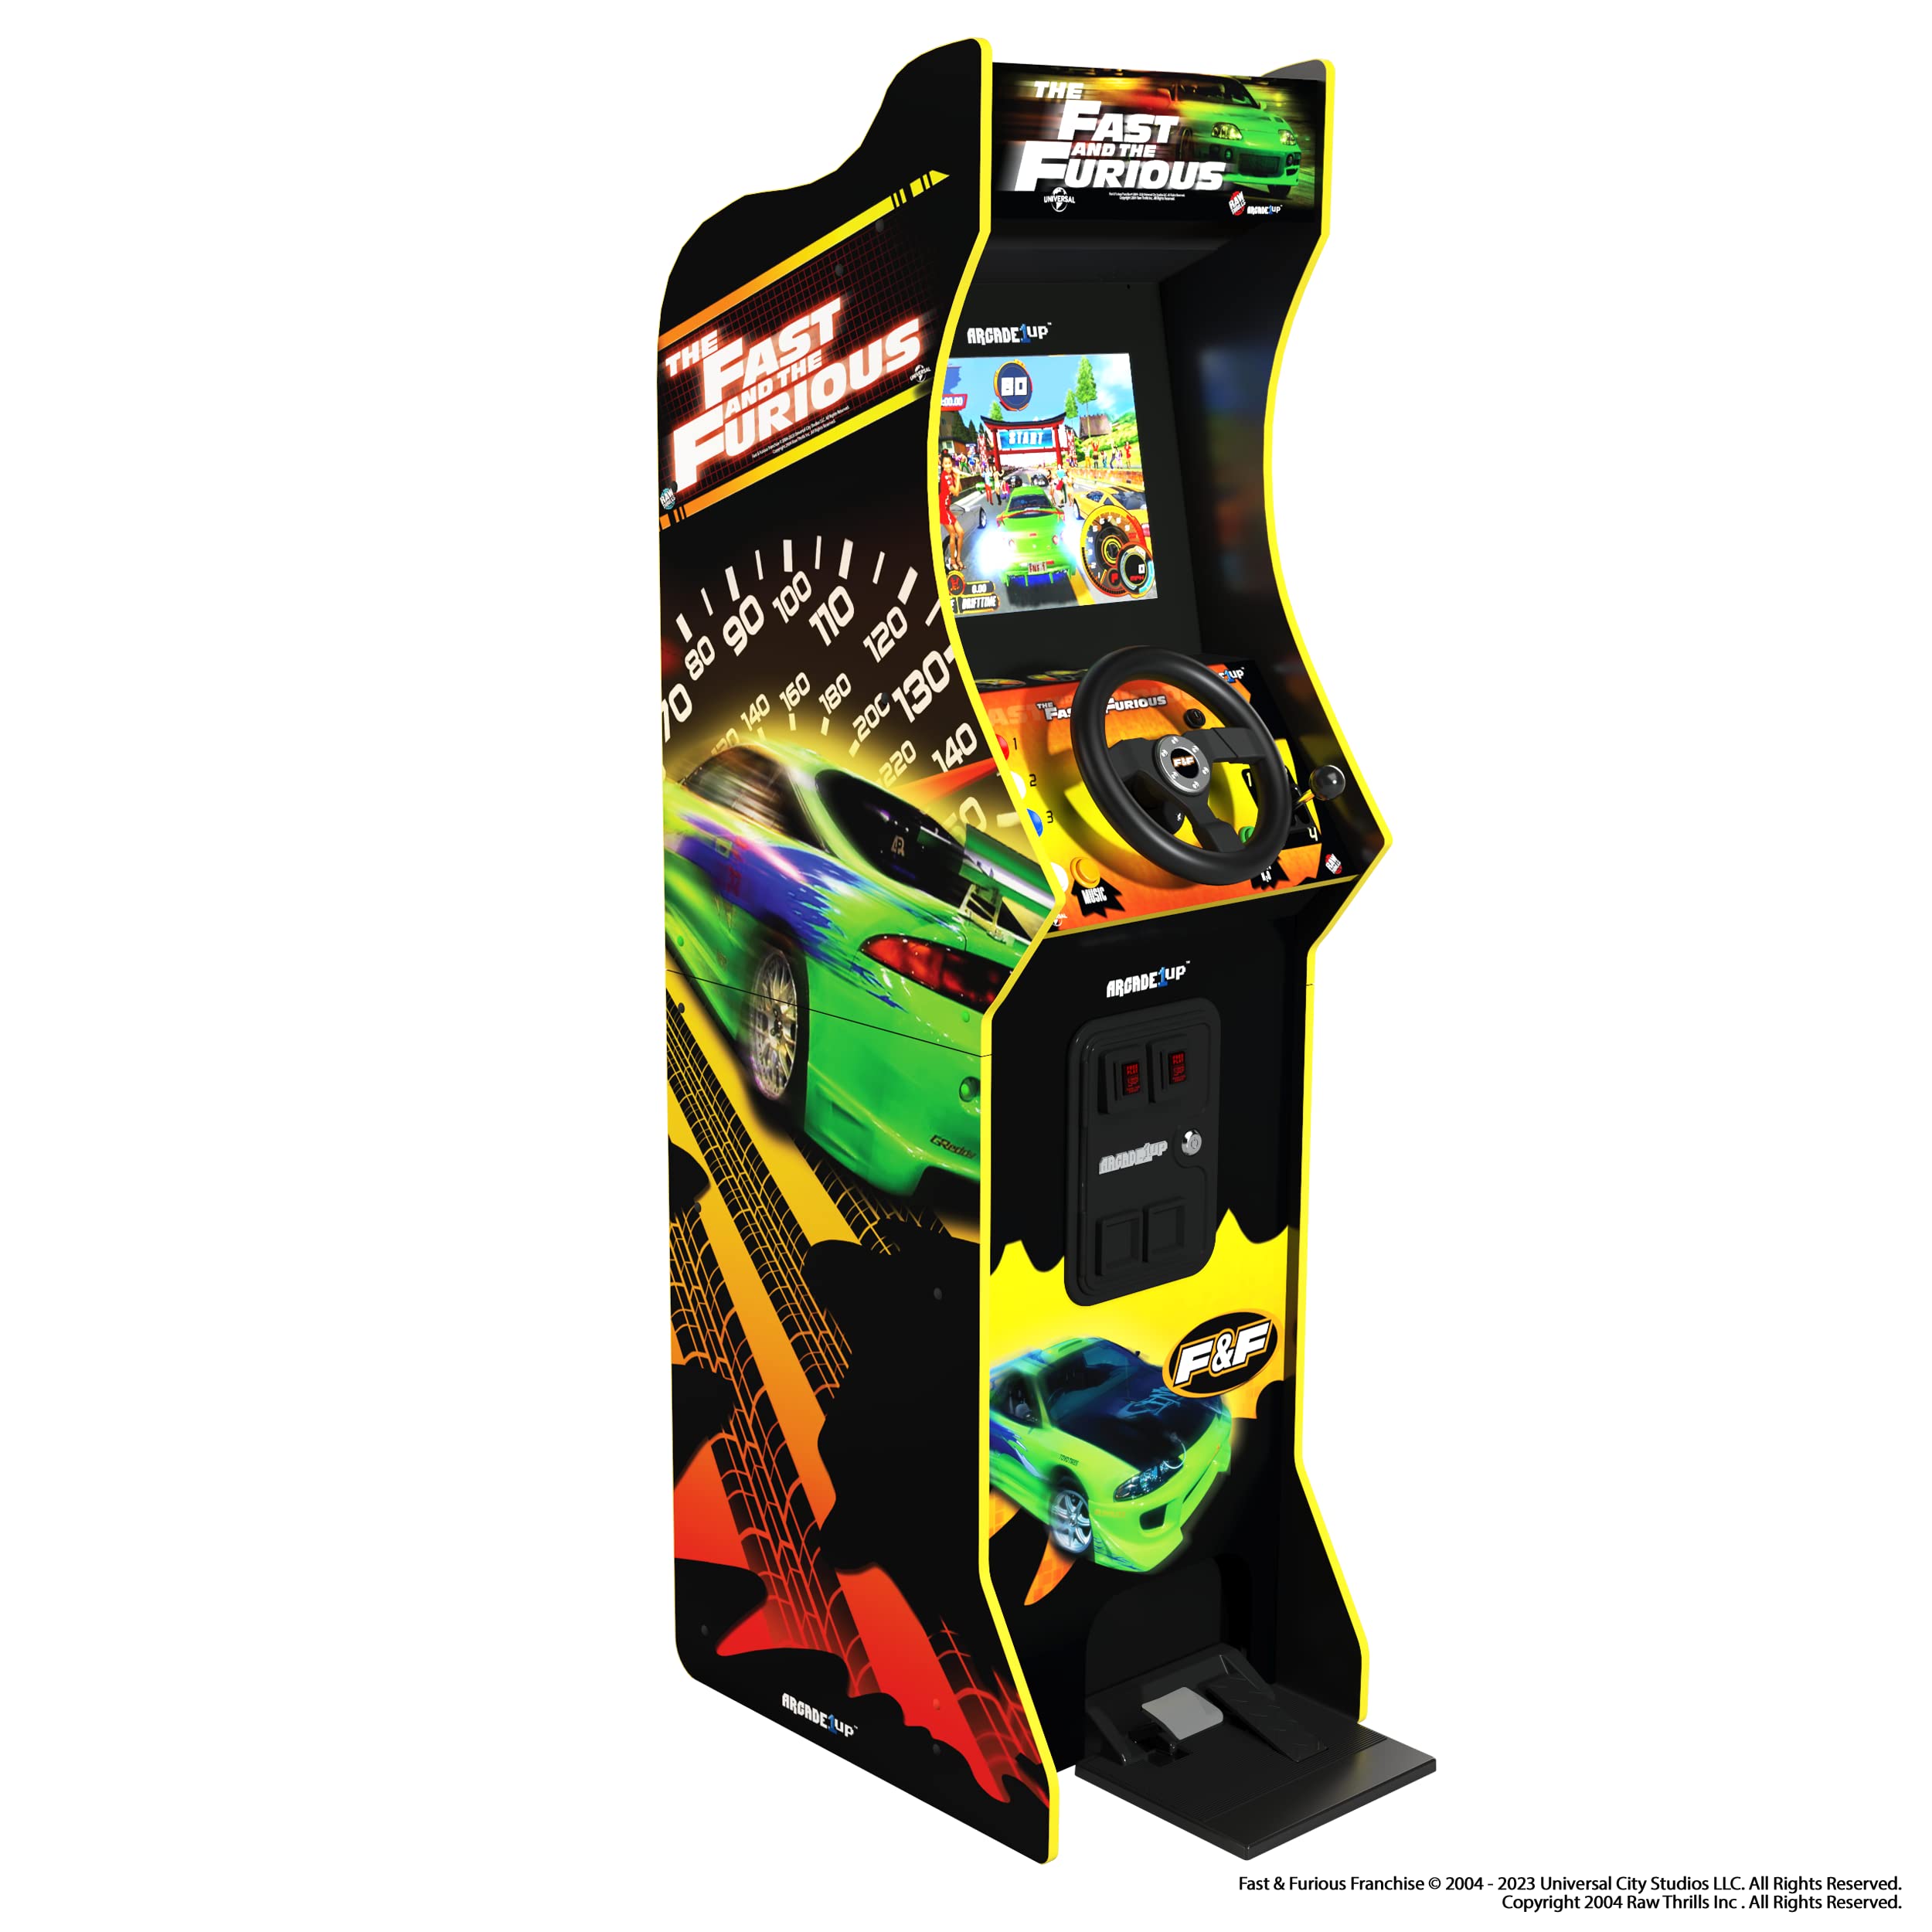 Arcade1up Console Videogioco Deluxe